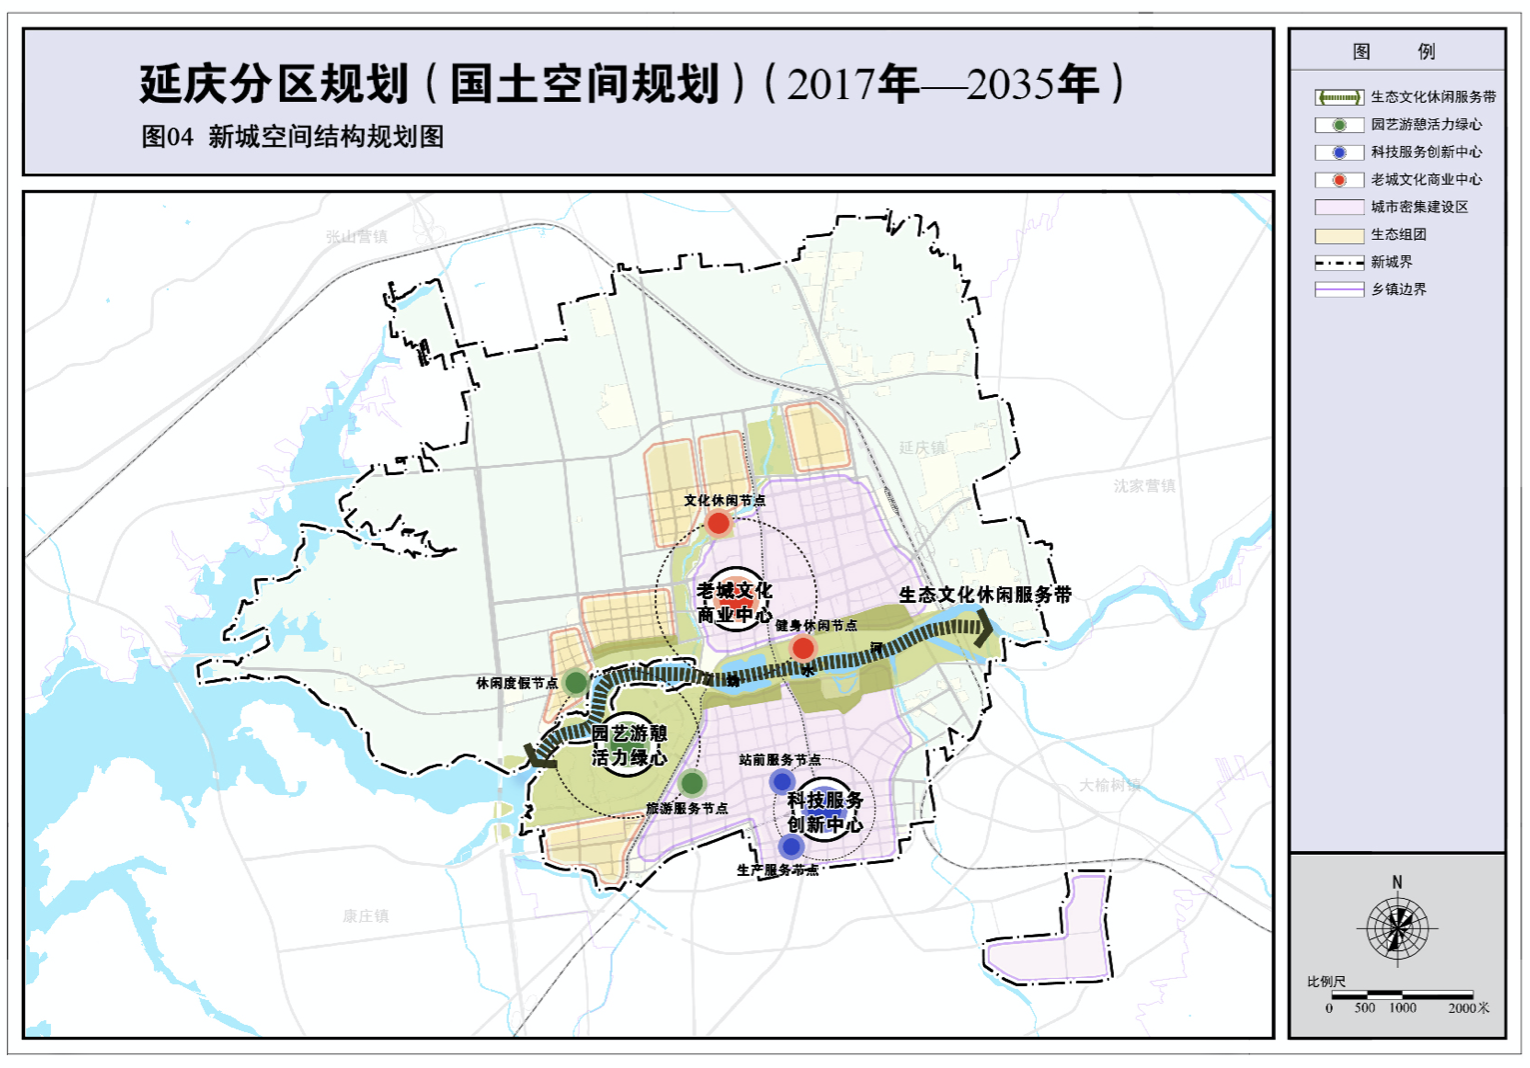 北京延庆将规划八达岭,大庄科等14个小城镇